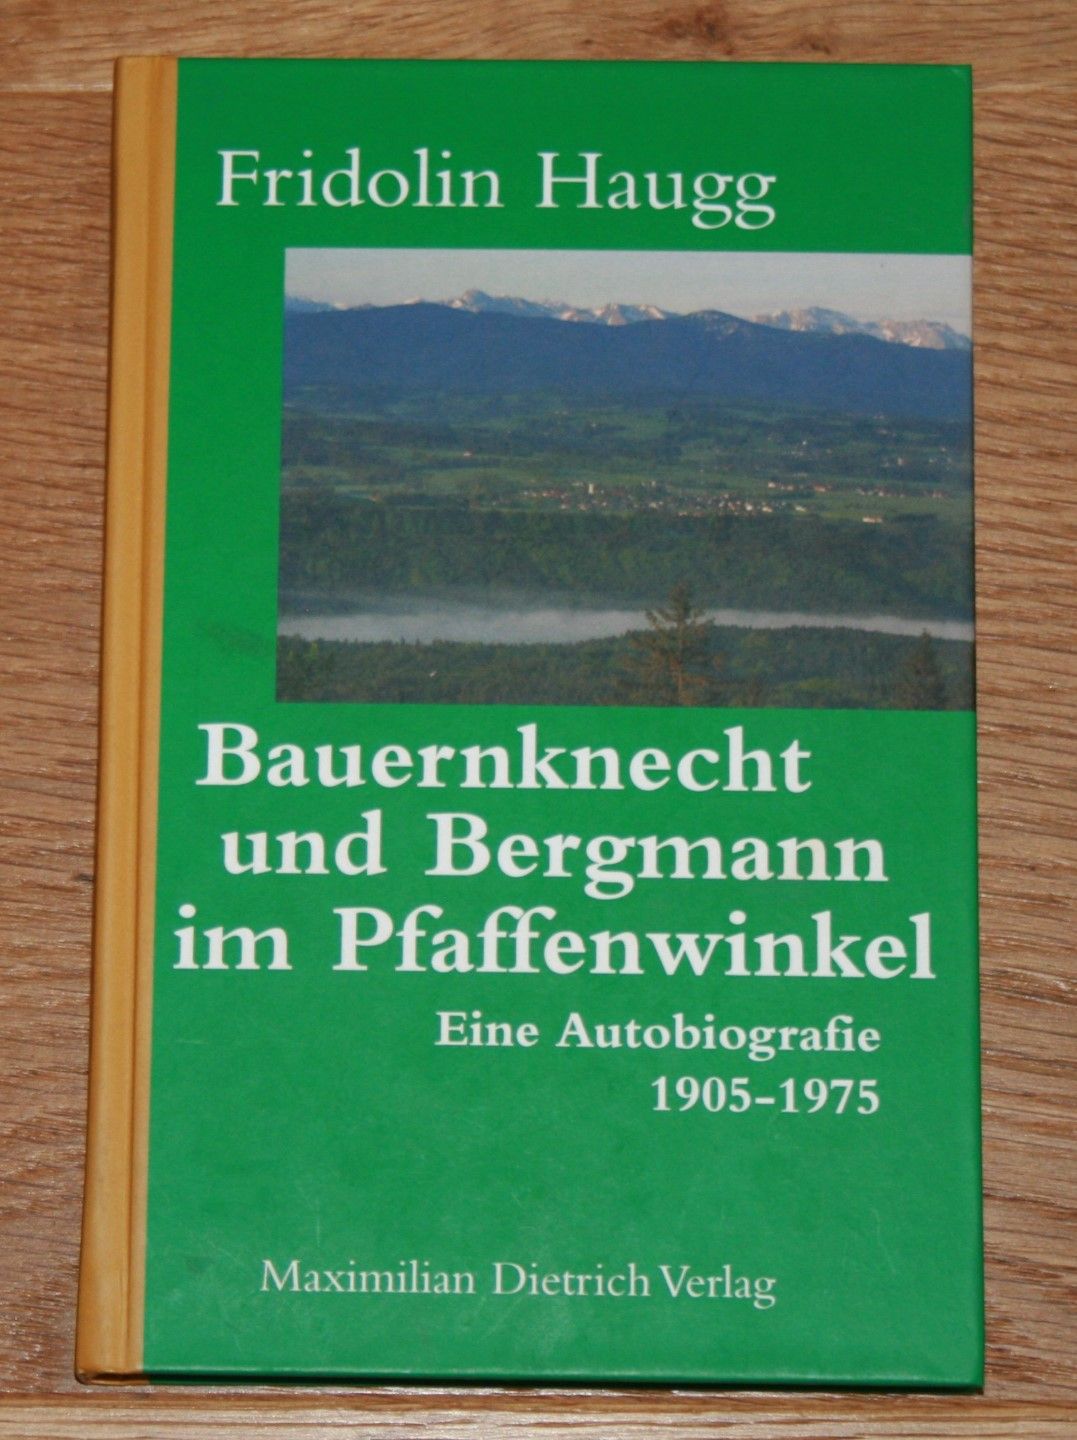 Bauernknecht und Bergmann im Pfaffenwinkel. Eine Autobiografie 1905 - 1975. - Haugg, Fridolin